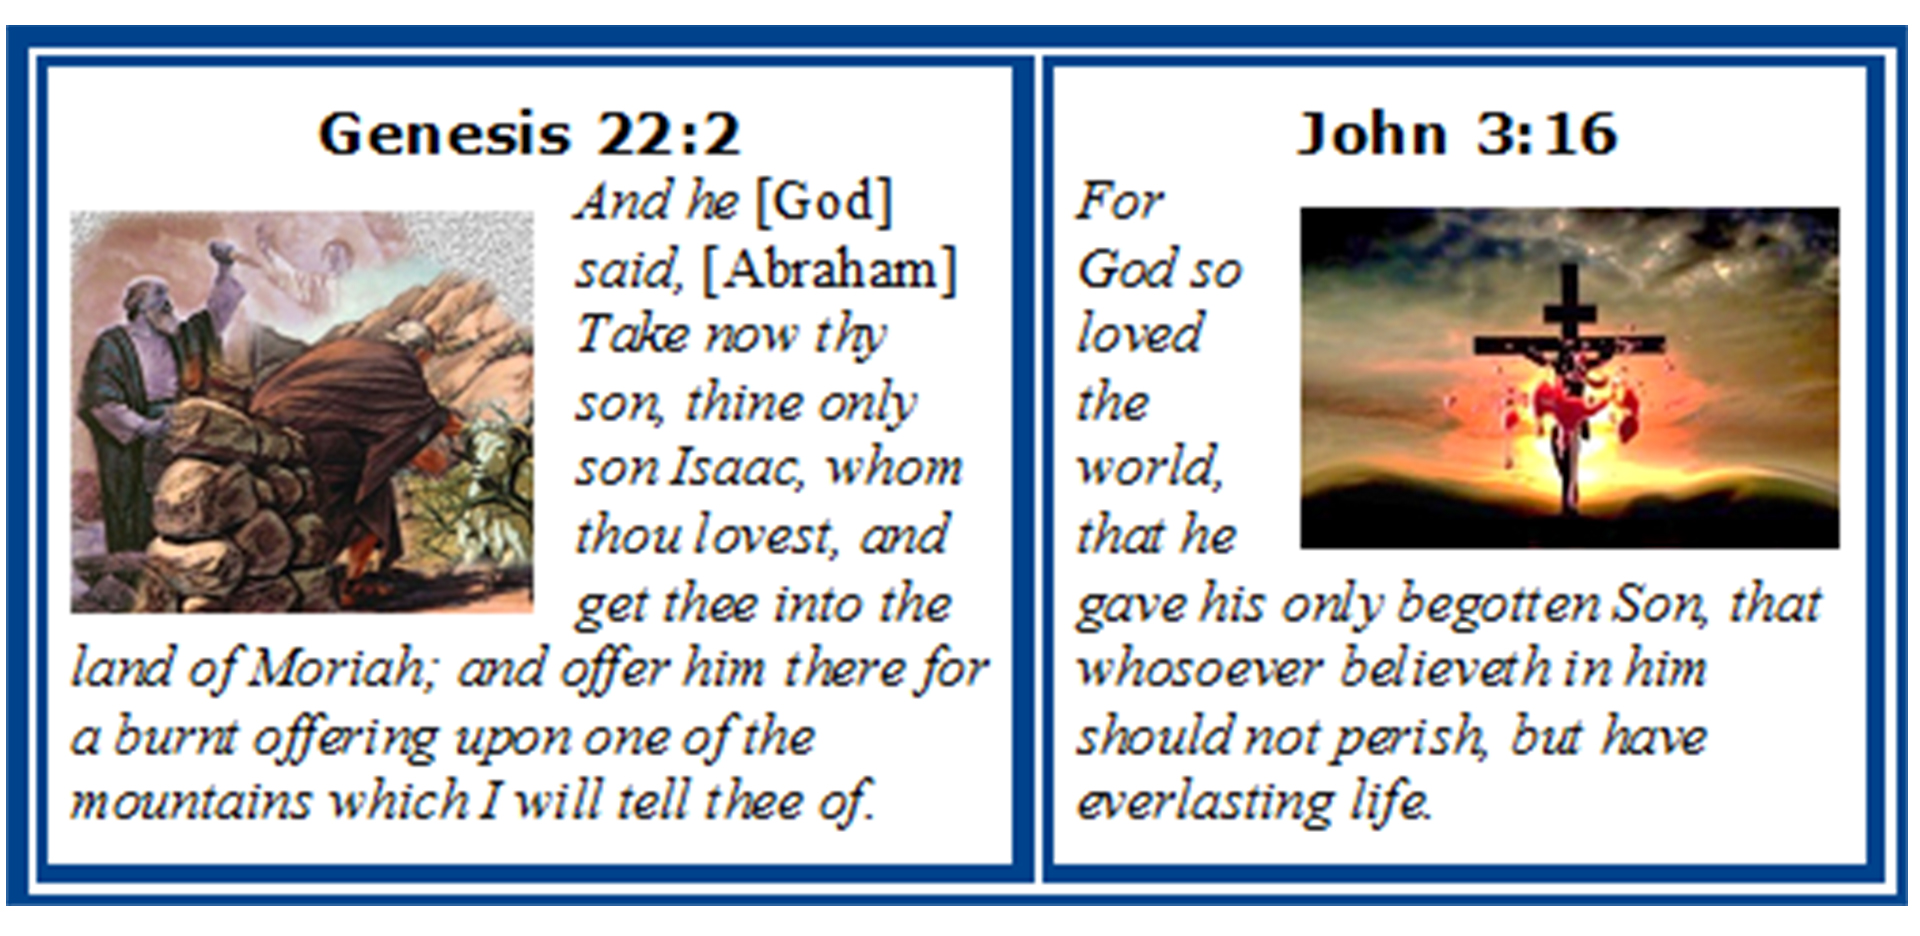 Genesis 22:2 and John 3:16